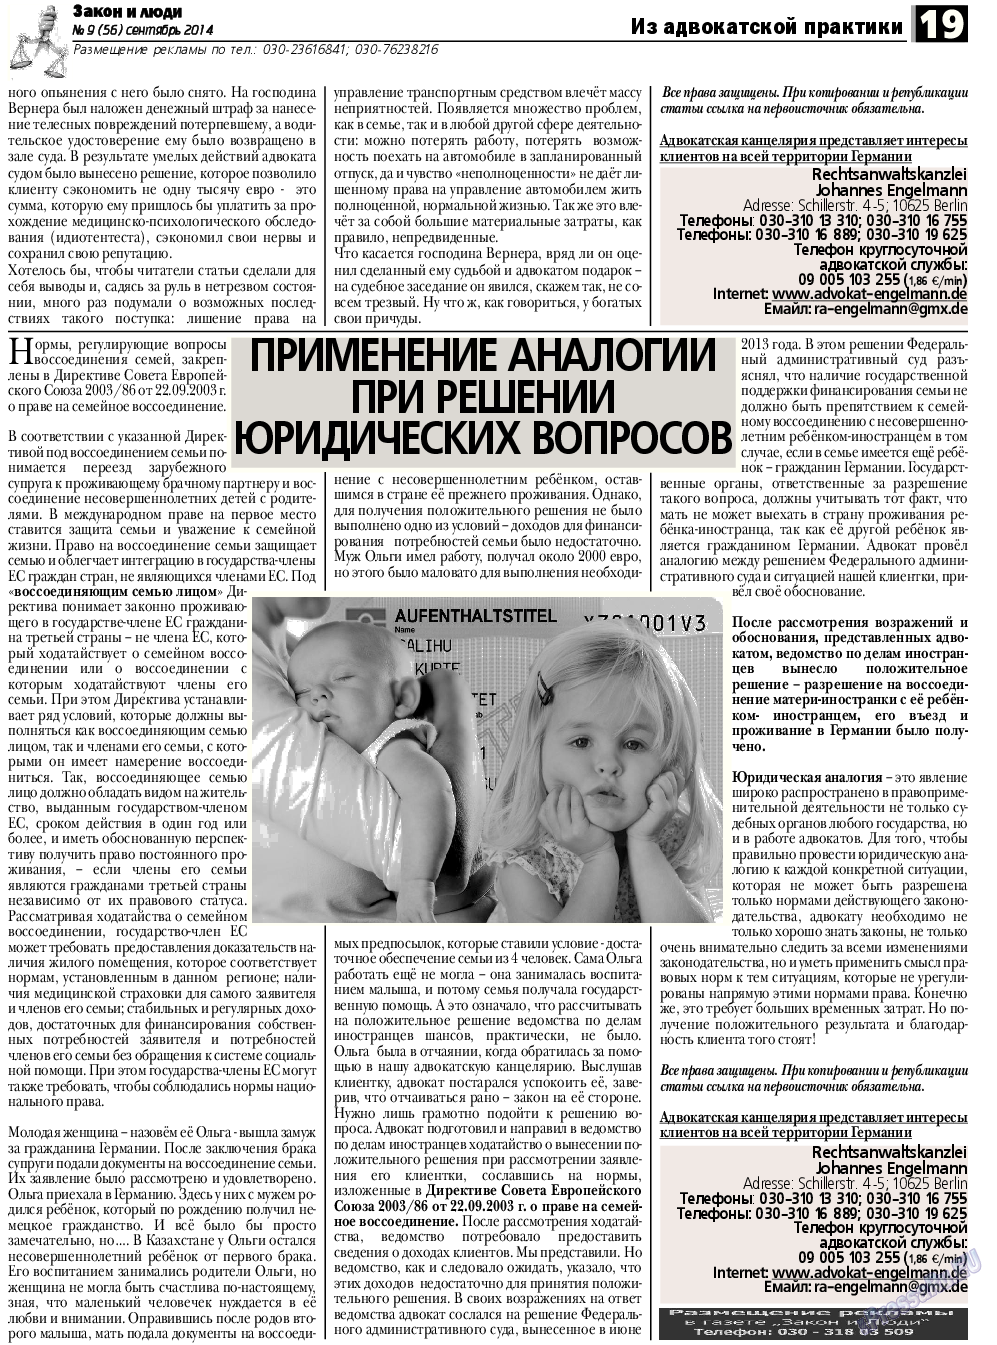 Закон и люди, газета. 2014 №9 стр.19